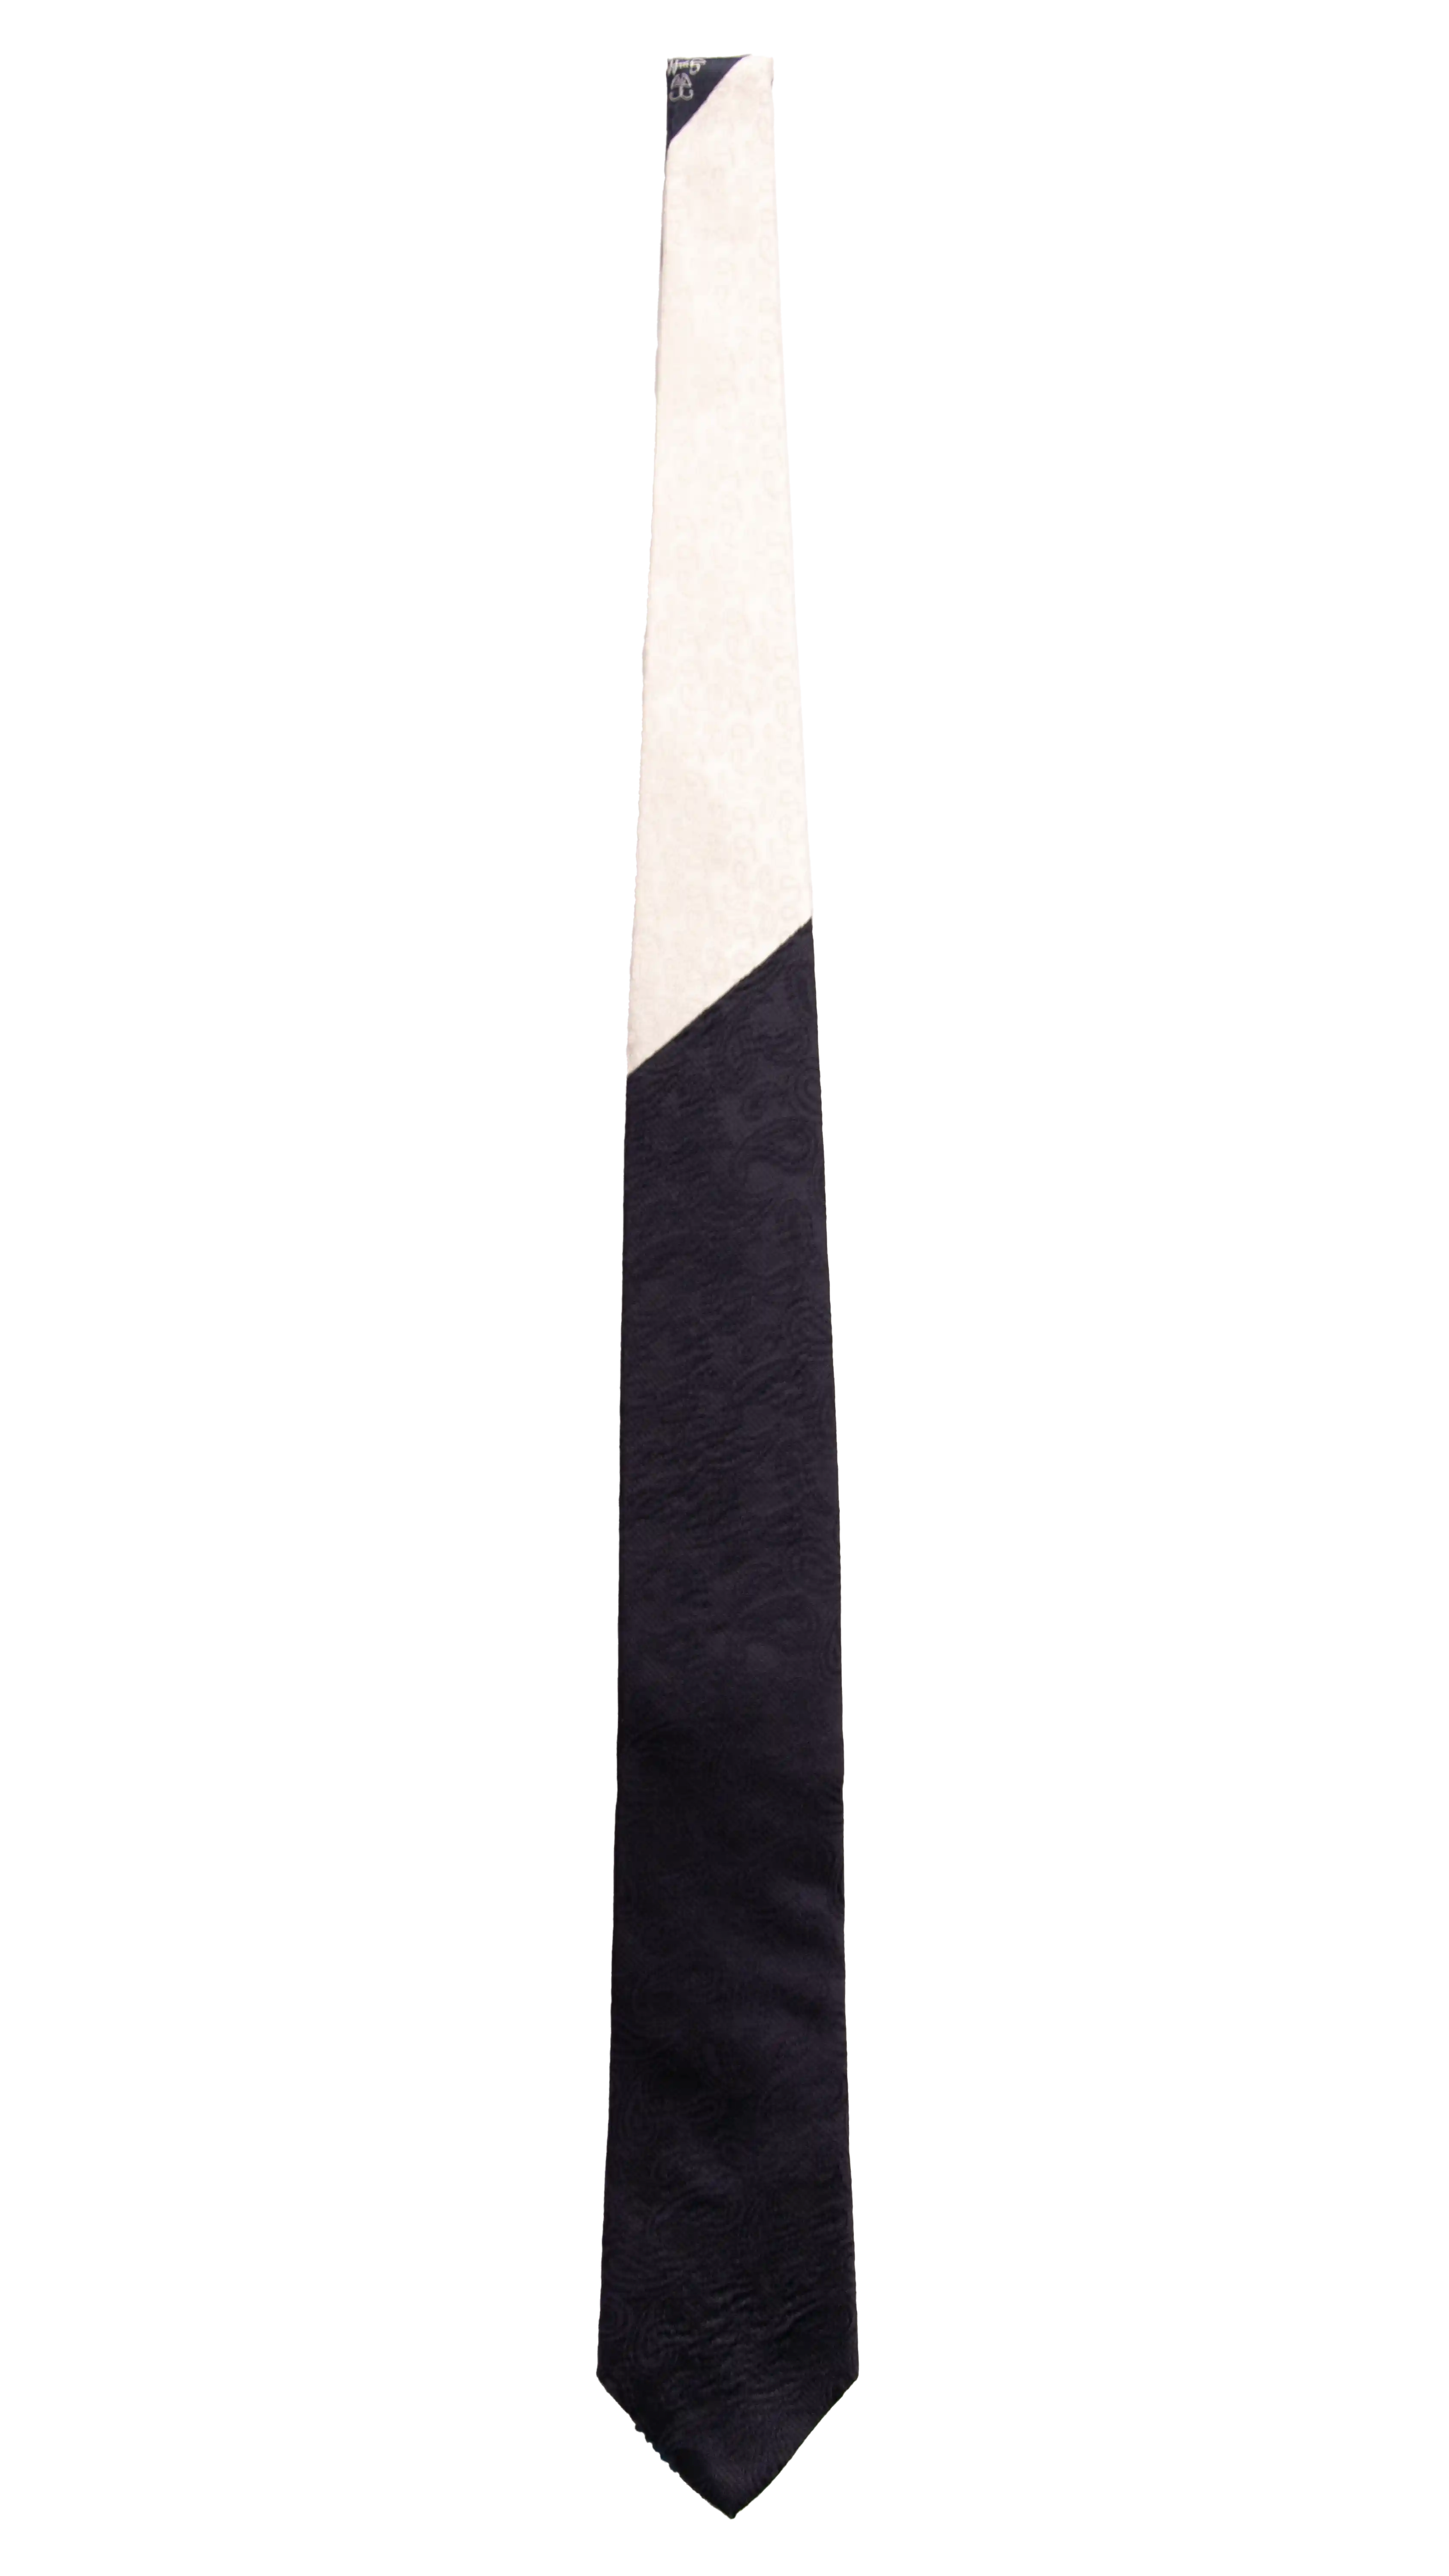 Cravatta Cerimonia Blu Paisley Nodo in Contrasto Bianco Perla Paisley Made in Italy Graffeo Cravatte Intera